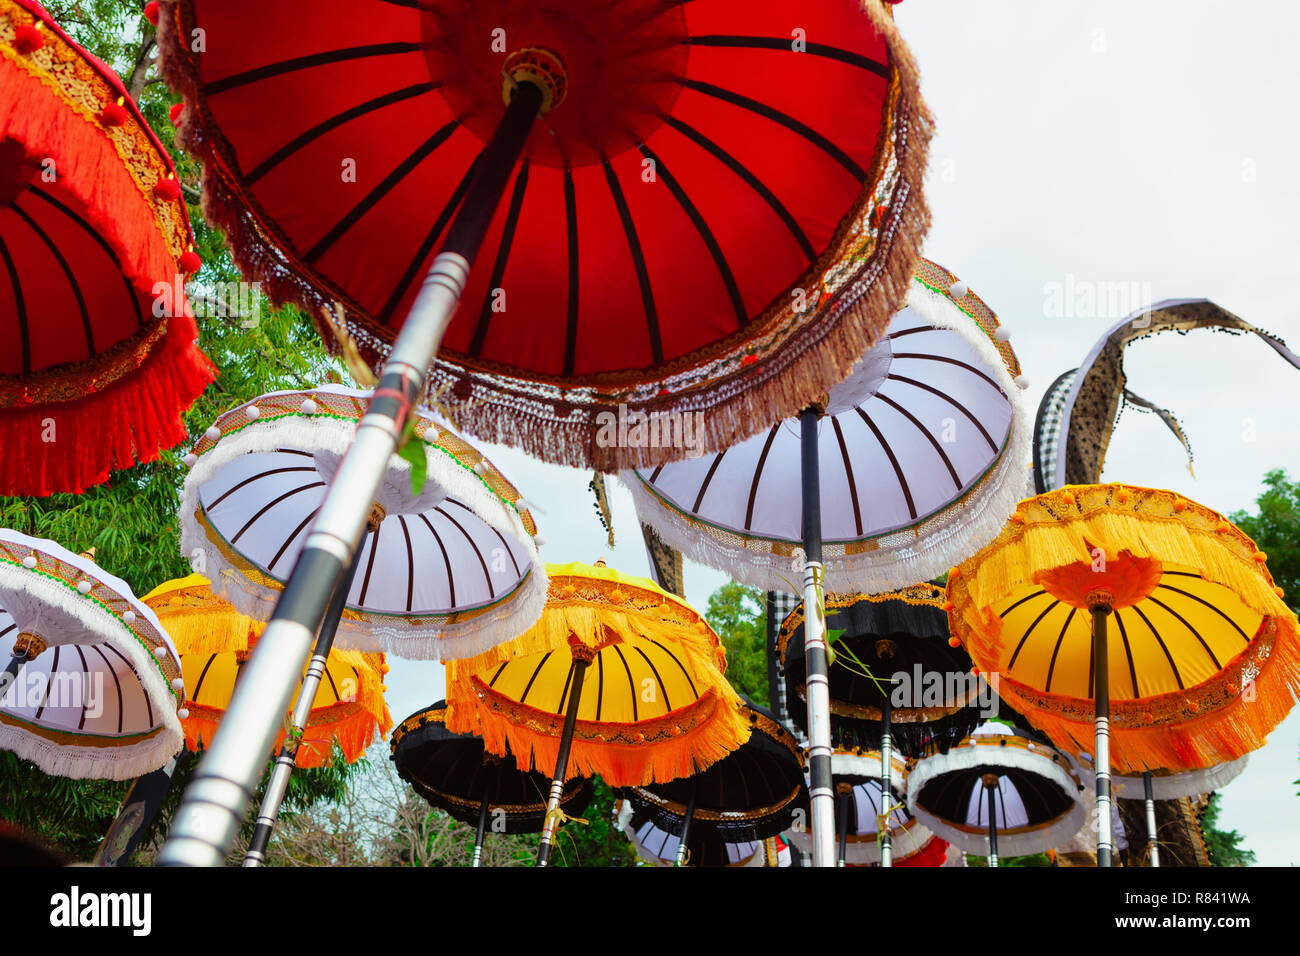 Gruppe von wunderschönen balinesischen Fahnen und Sonnenschirme an der zentralen Feier in der hinduistischen Tempel. Traditionelles Design, Kunst Feste, Kultur der Insel Bali Stockfoto